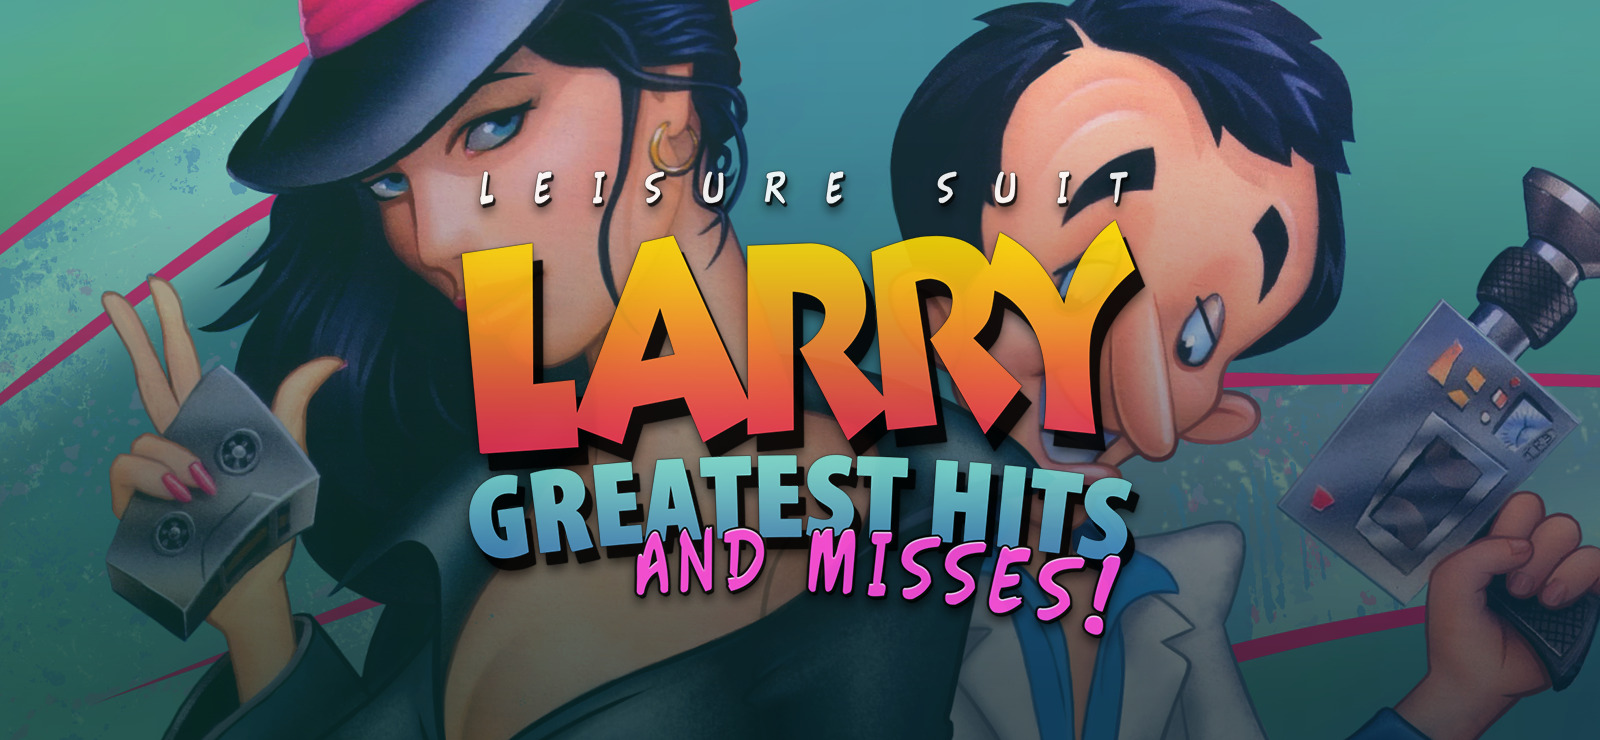 Larry игра. Игра Larry Leisure Suit 1. Leisure Suit Larry: Reloaded. Leisure Suit Larry девушки.